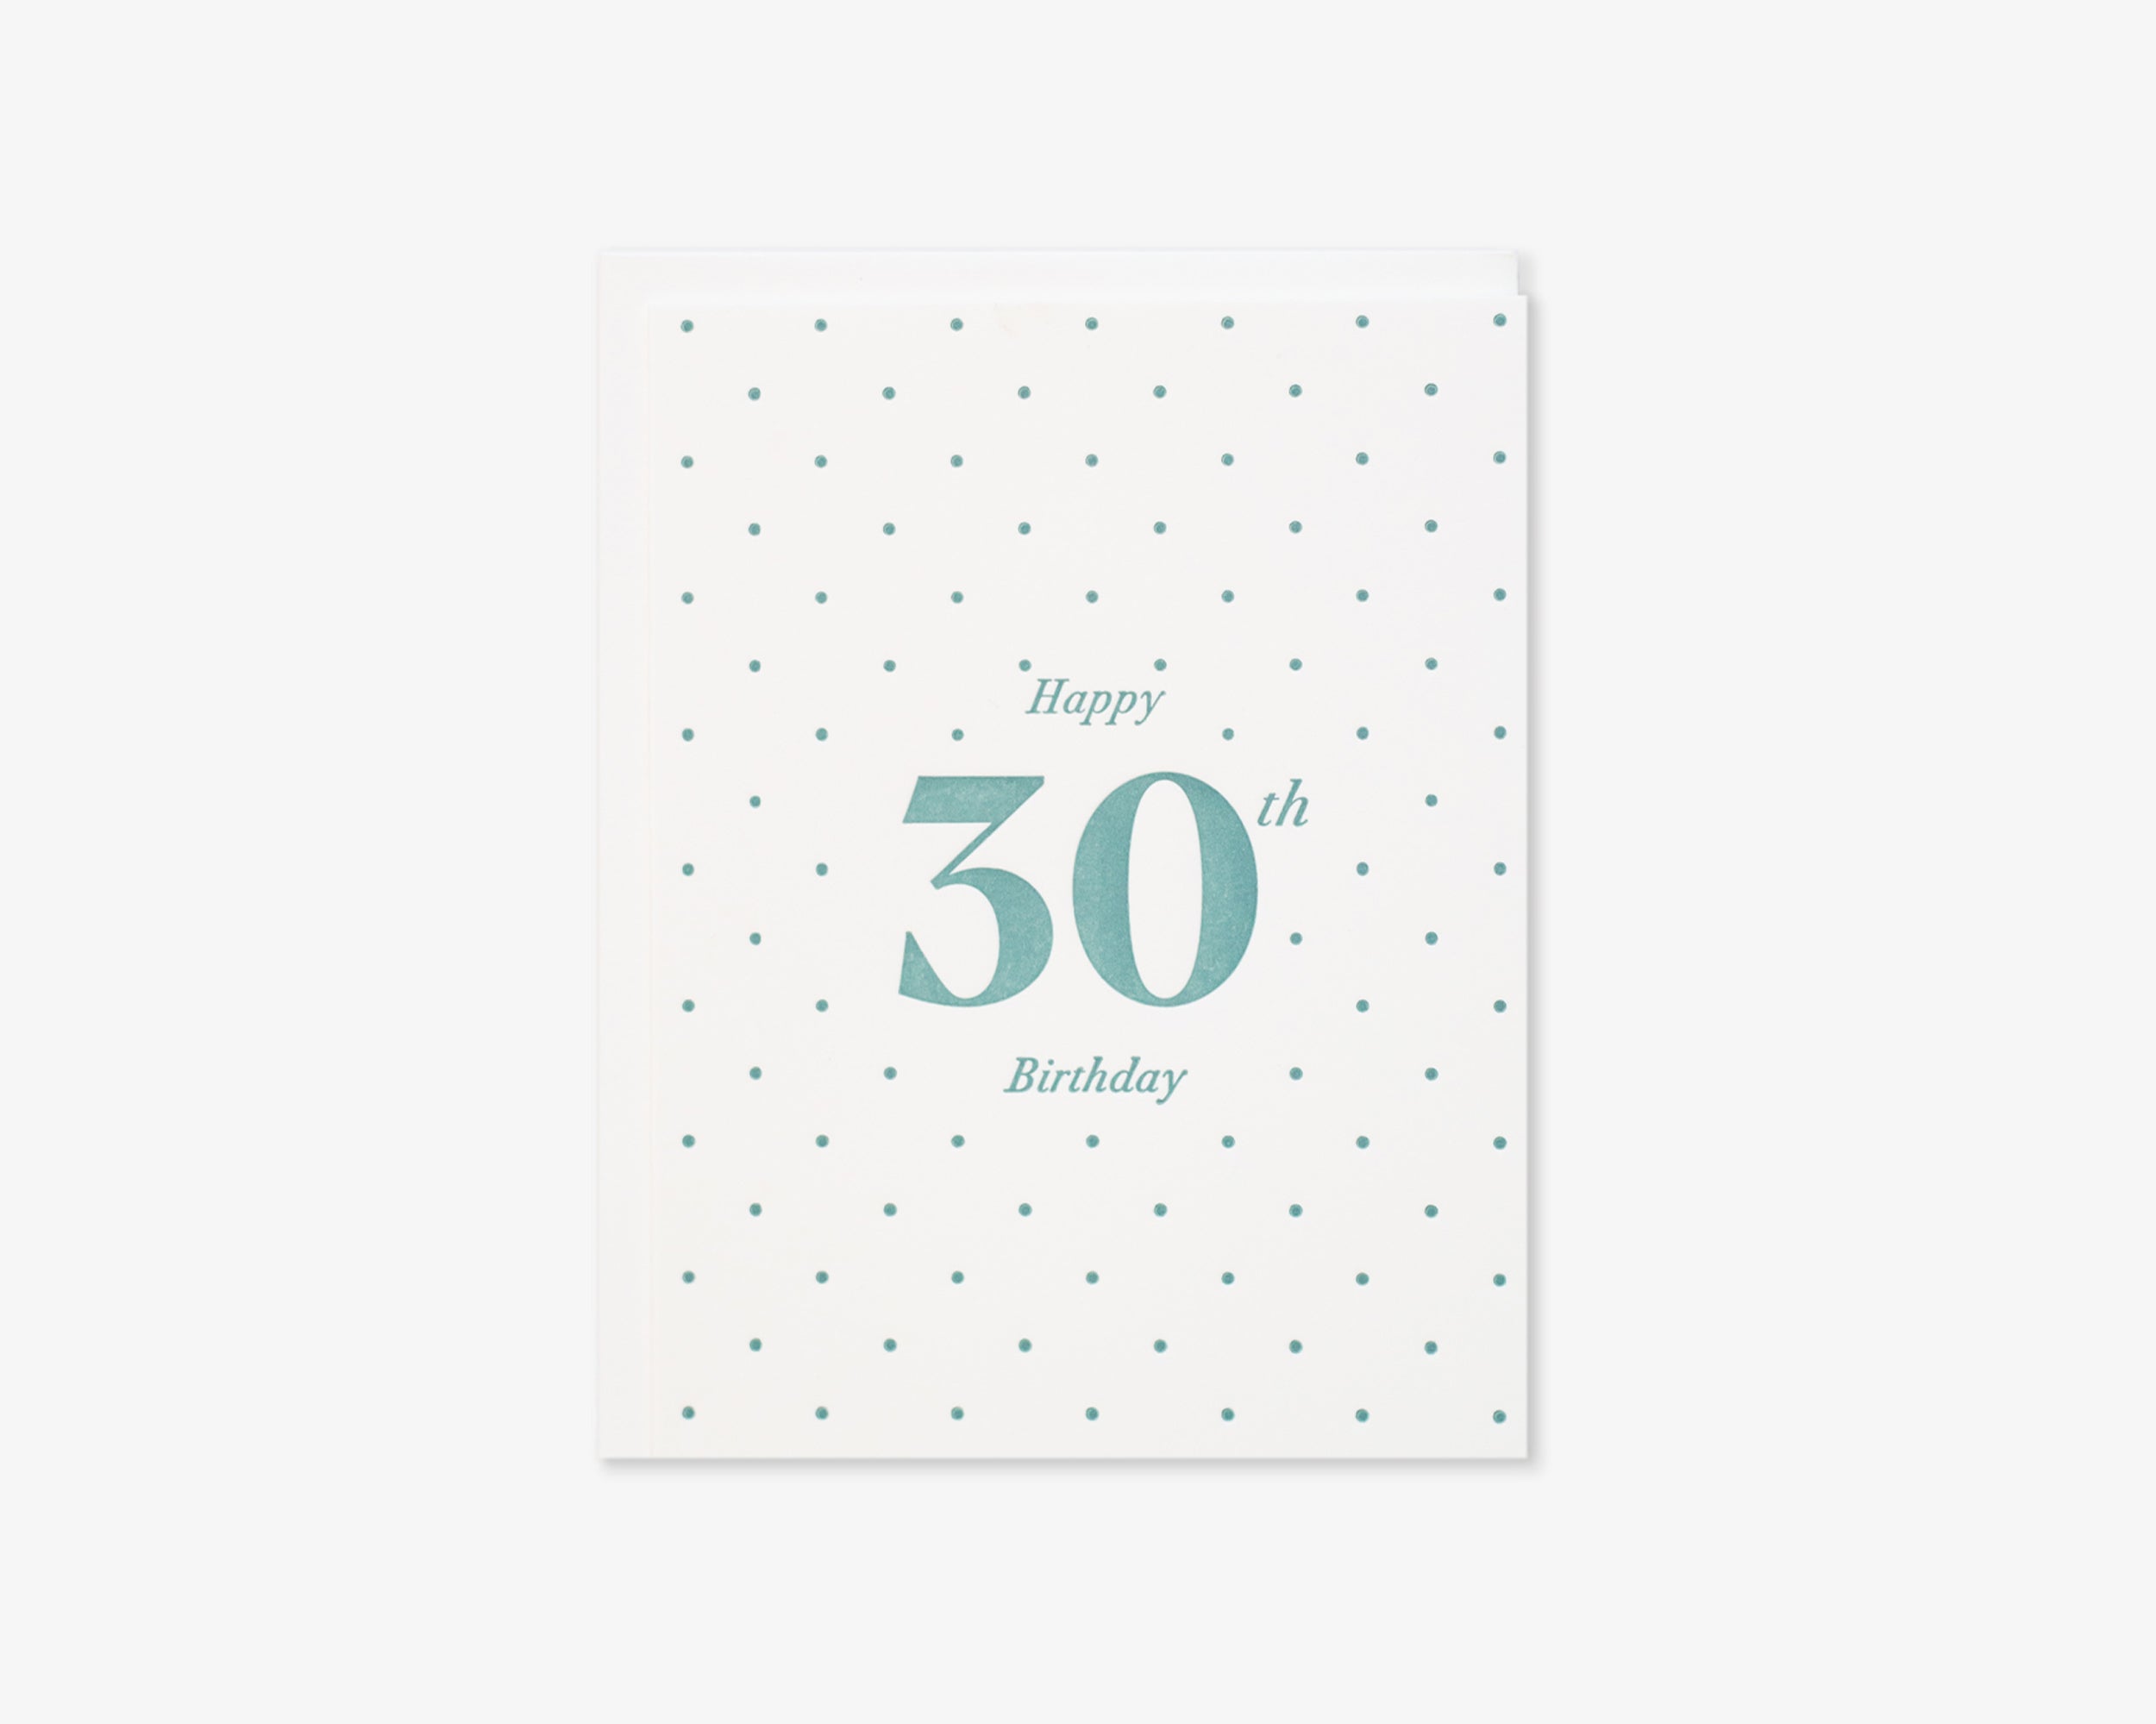 Happy 30th Birthday Card